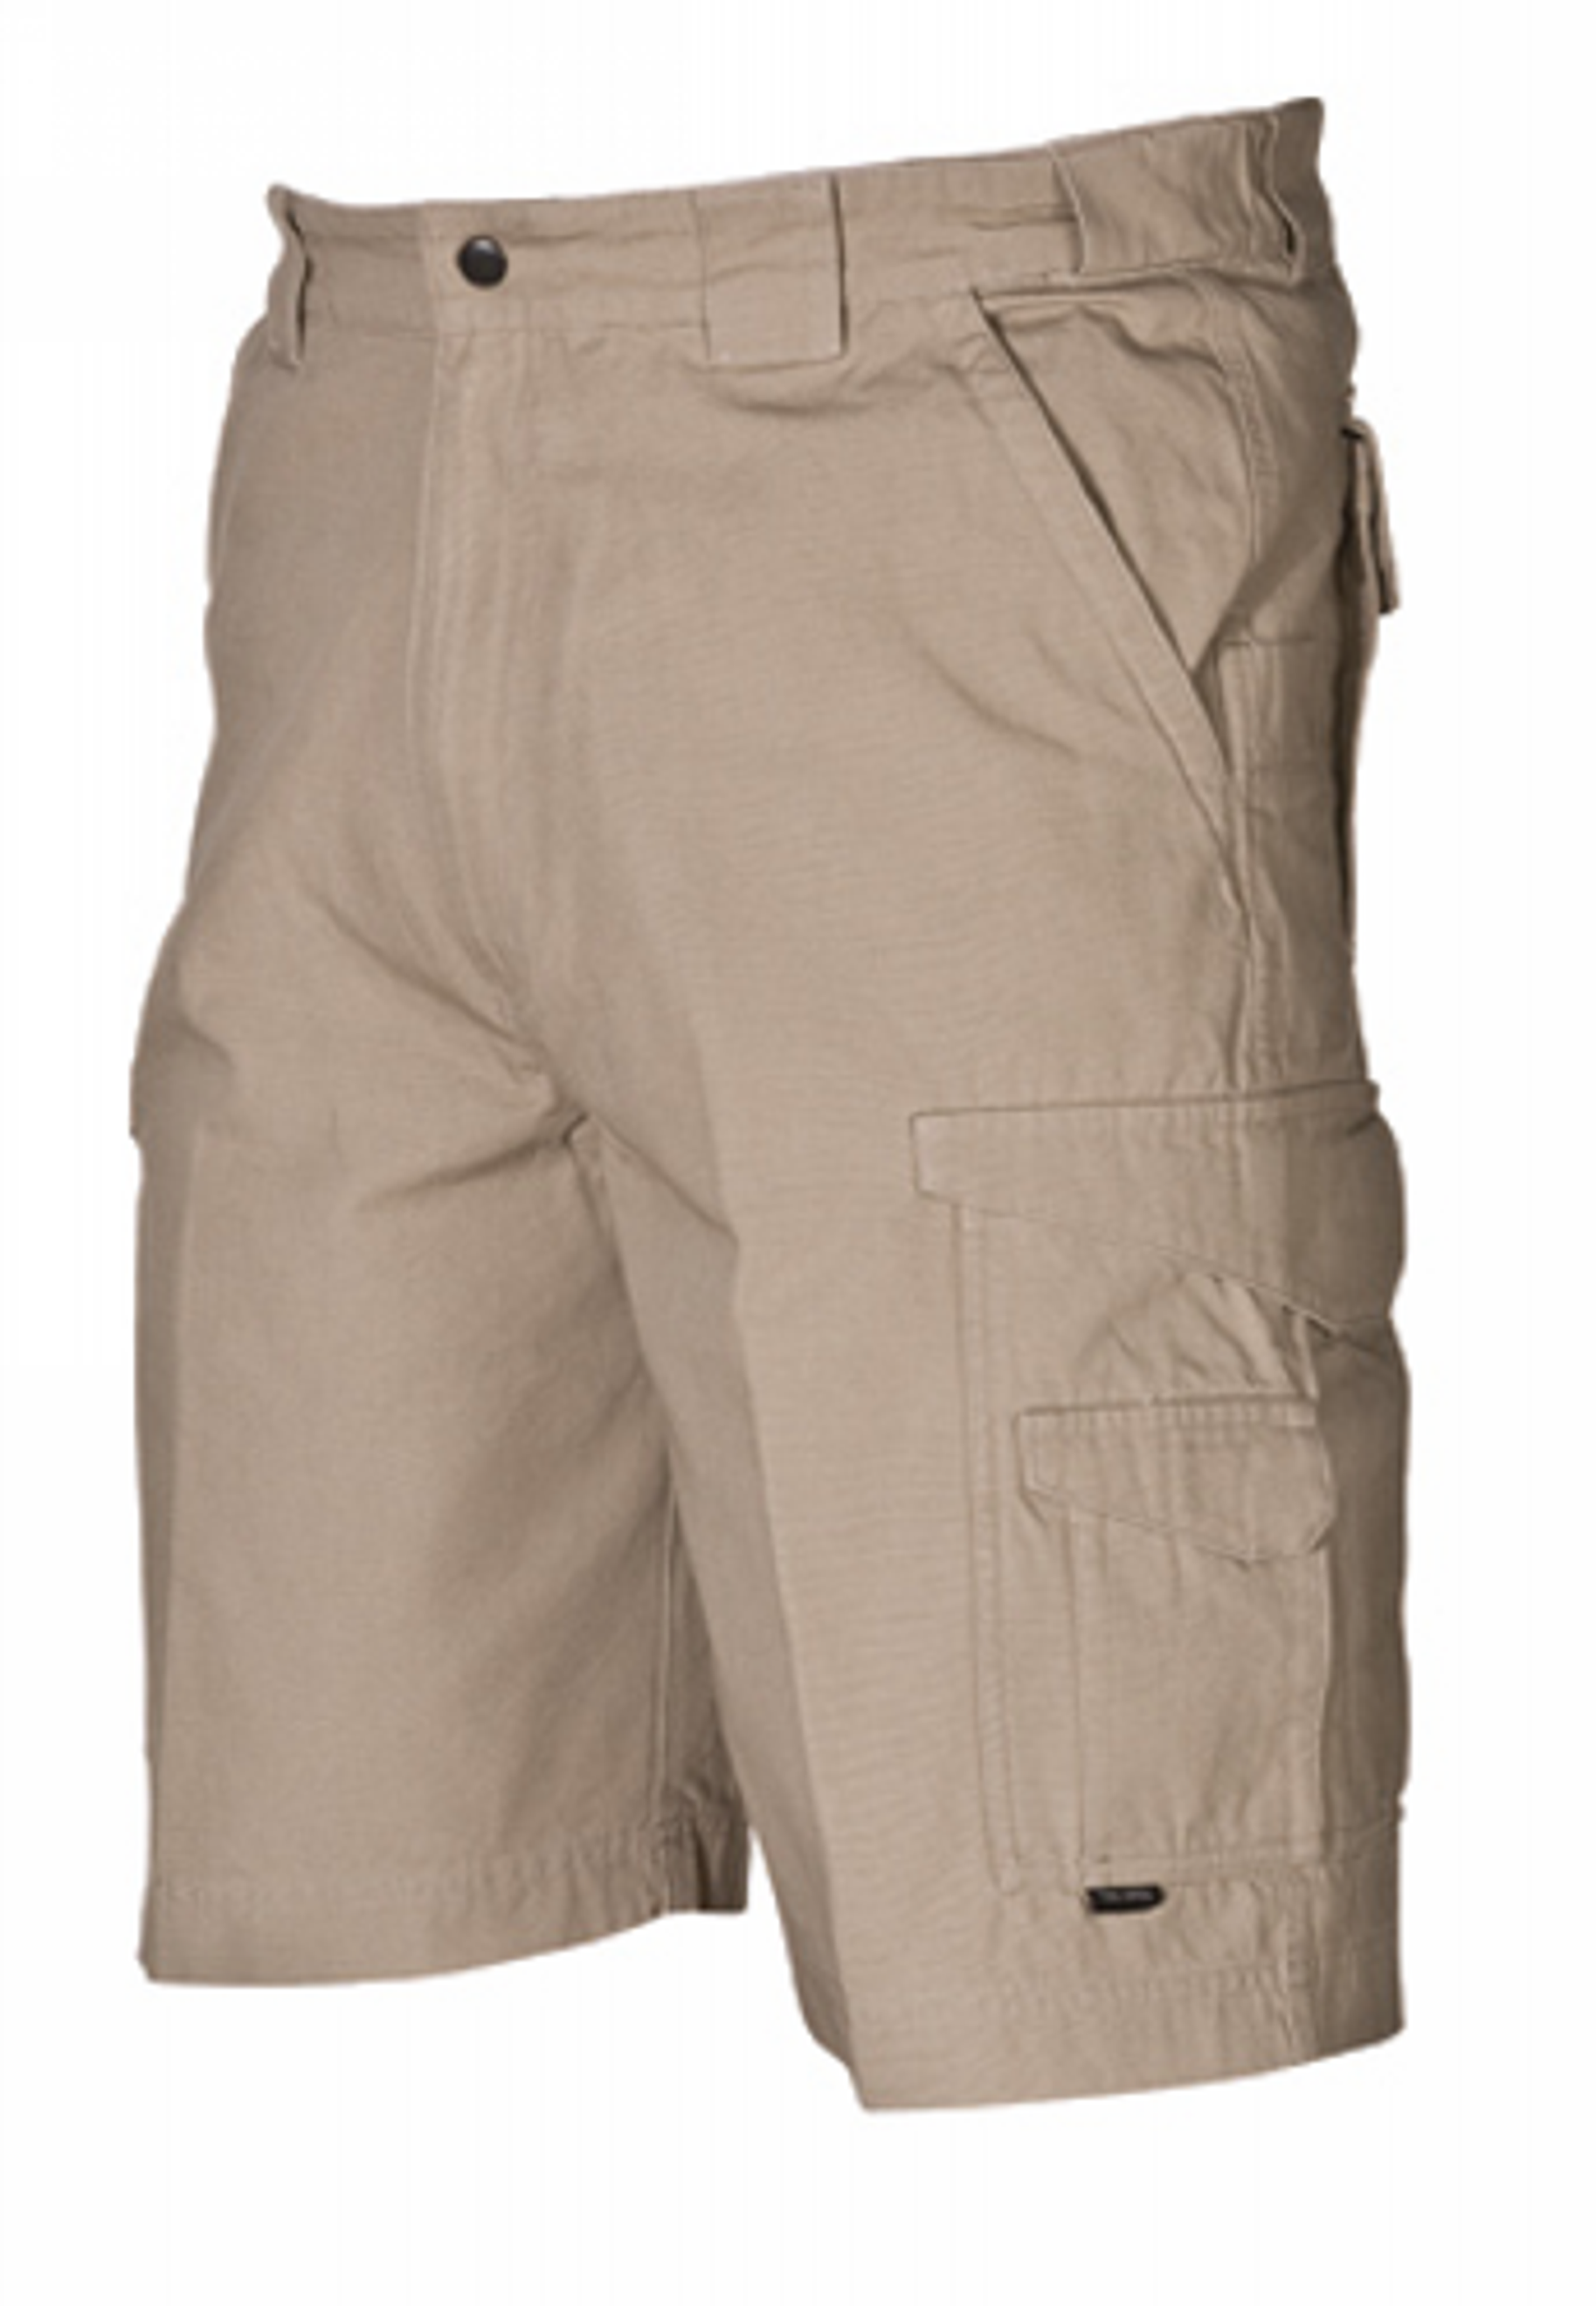 Original Tactical Shorts - KRTSP-4268009